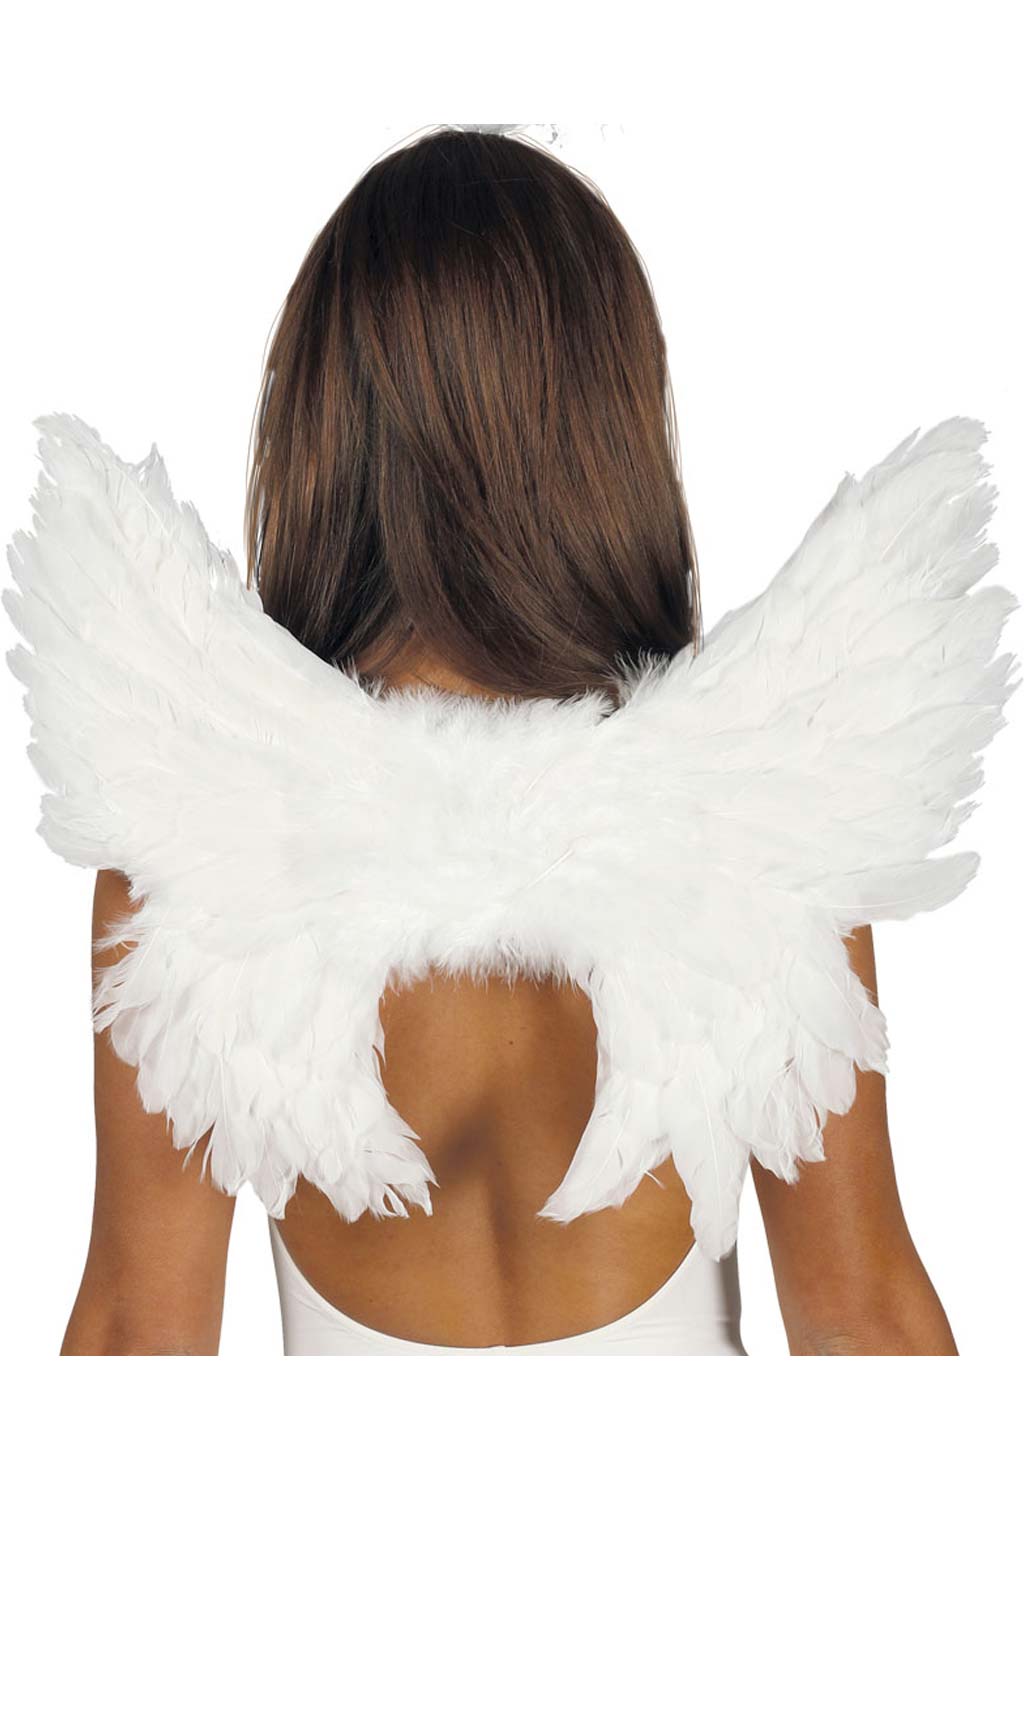 Alas de ángel grandes de plumas blancas